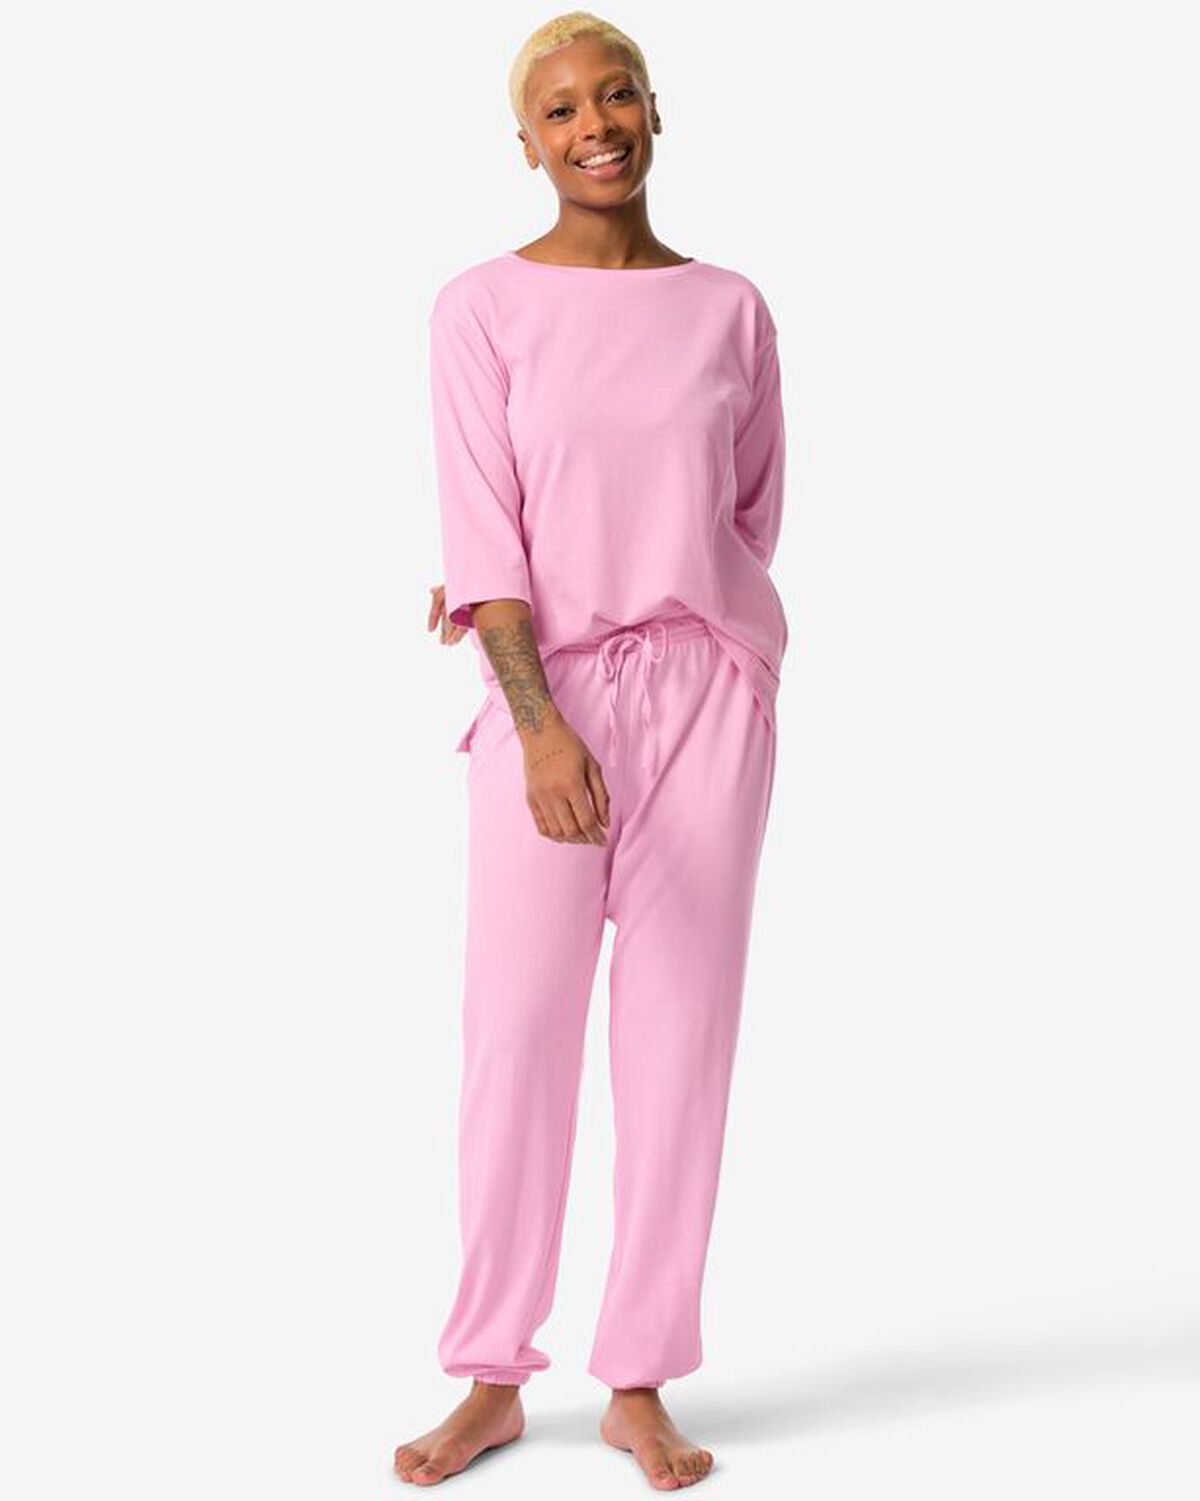 dames pyjamaset met katoen roze - 200905.0 - HEMA